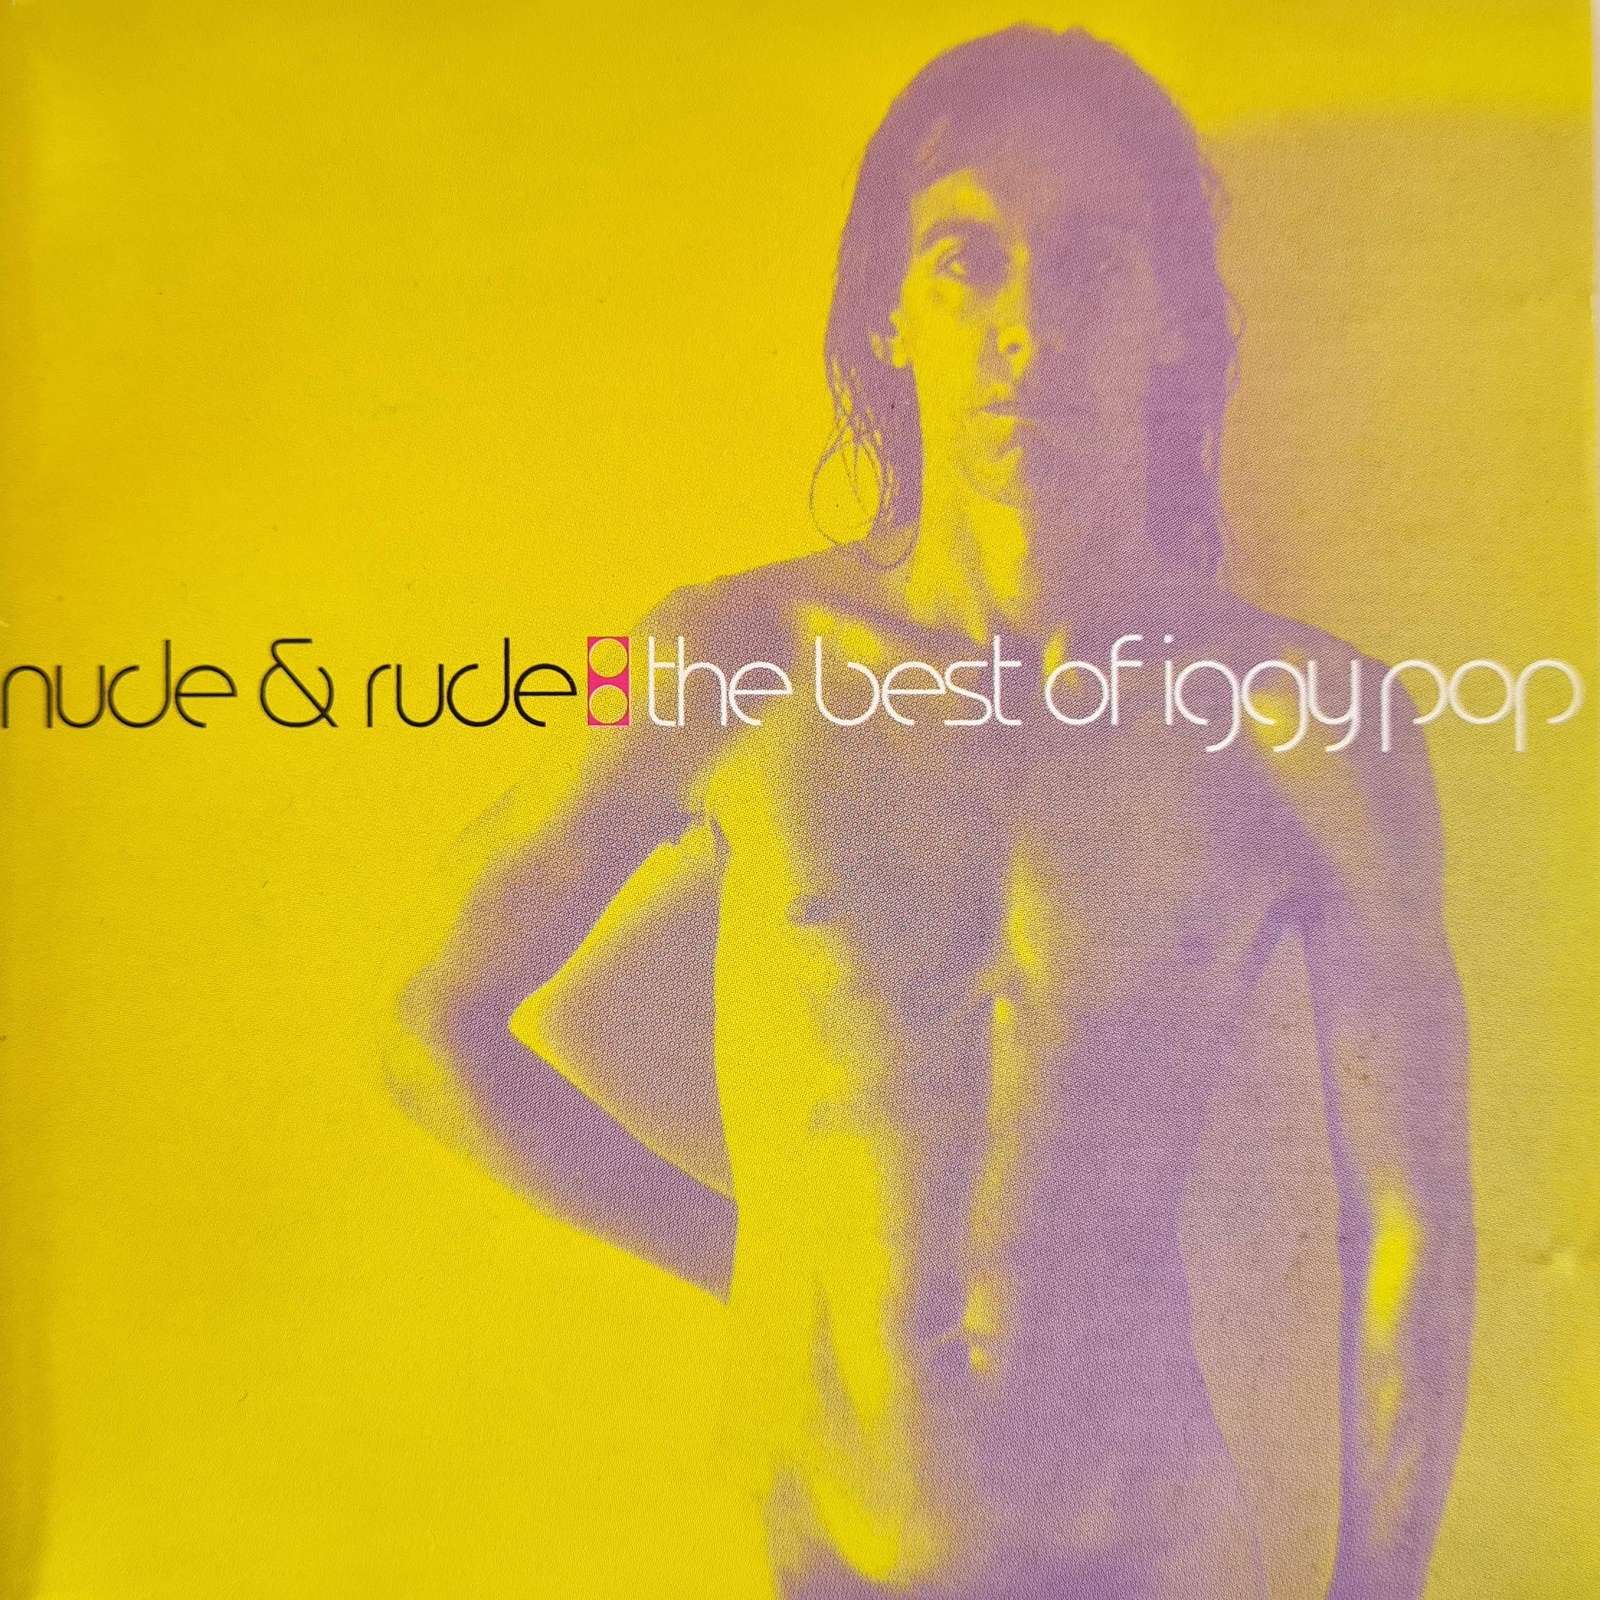 Iggy Pop - Nude & Rude - The Best of Iggy Pop (CD)